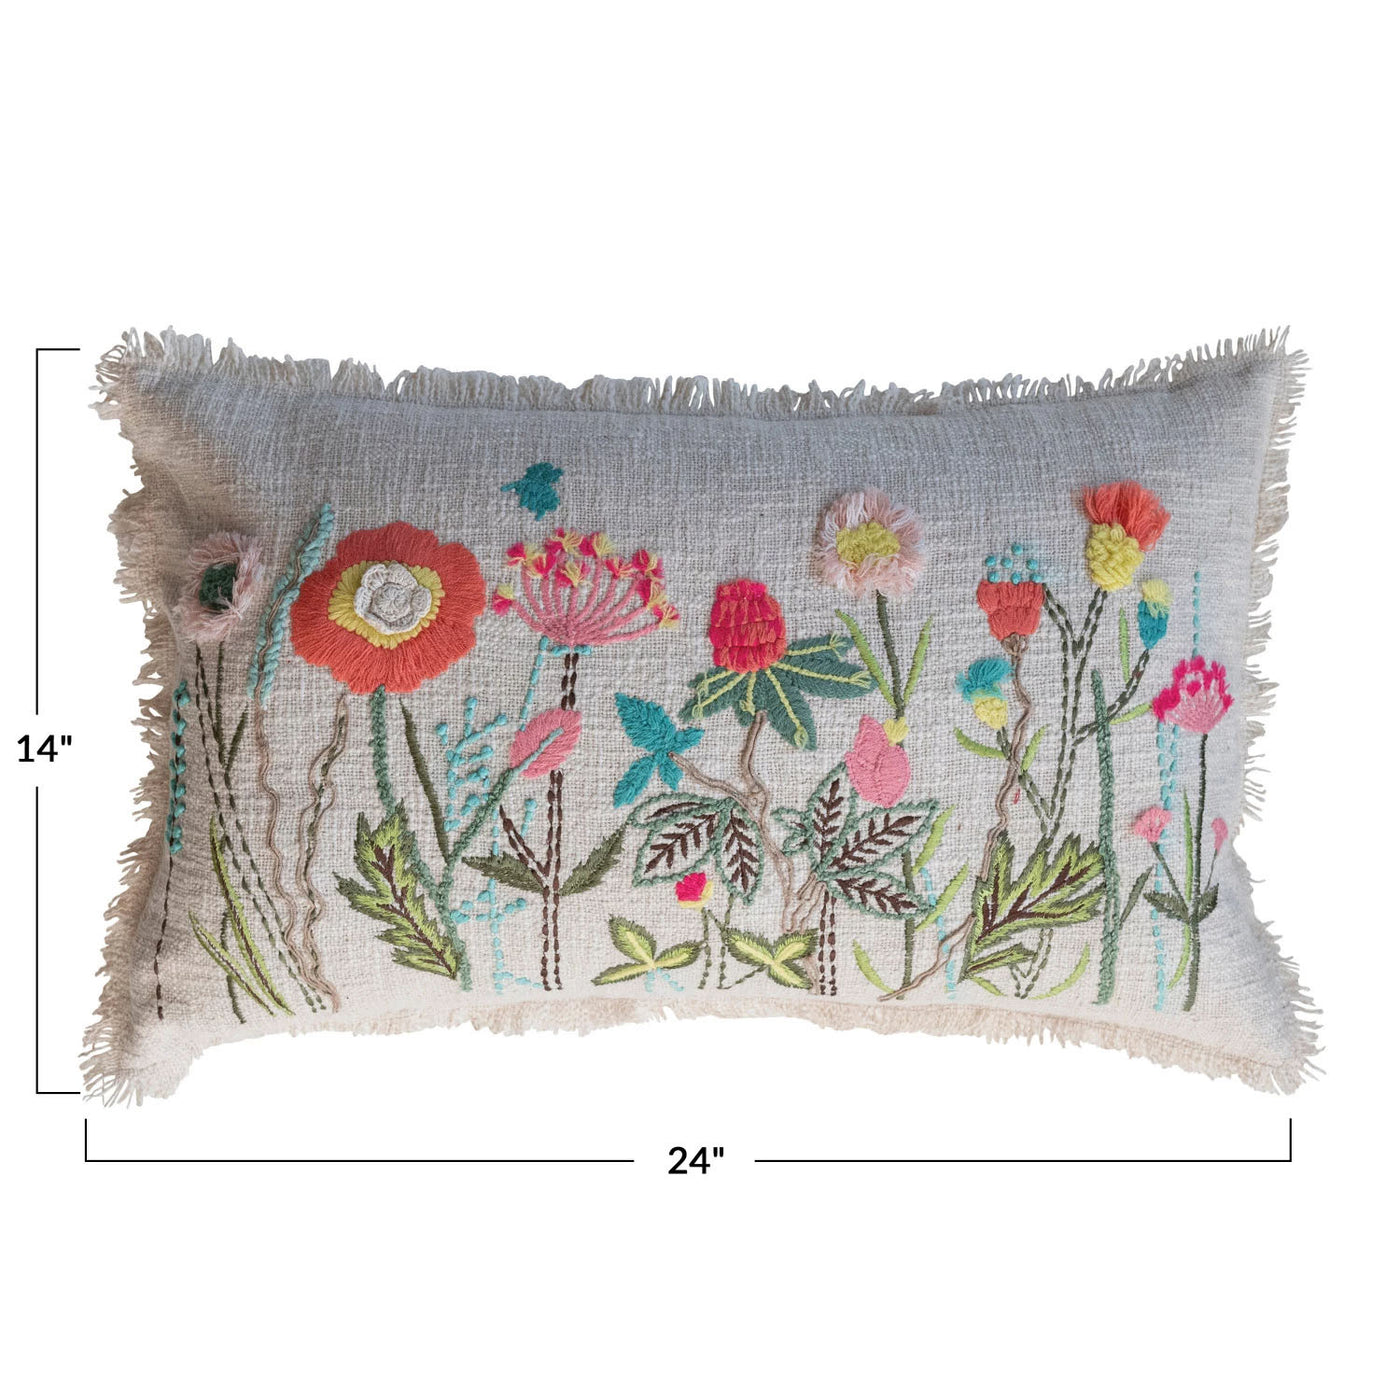 24" In The Garden Lumbar Pillow